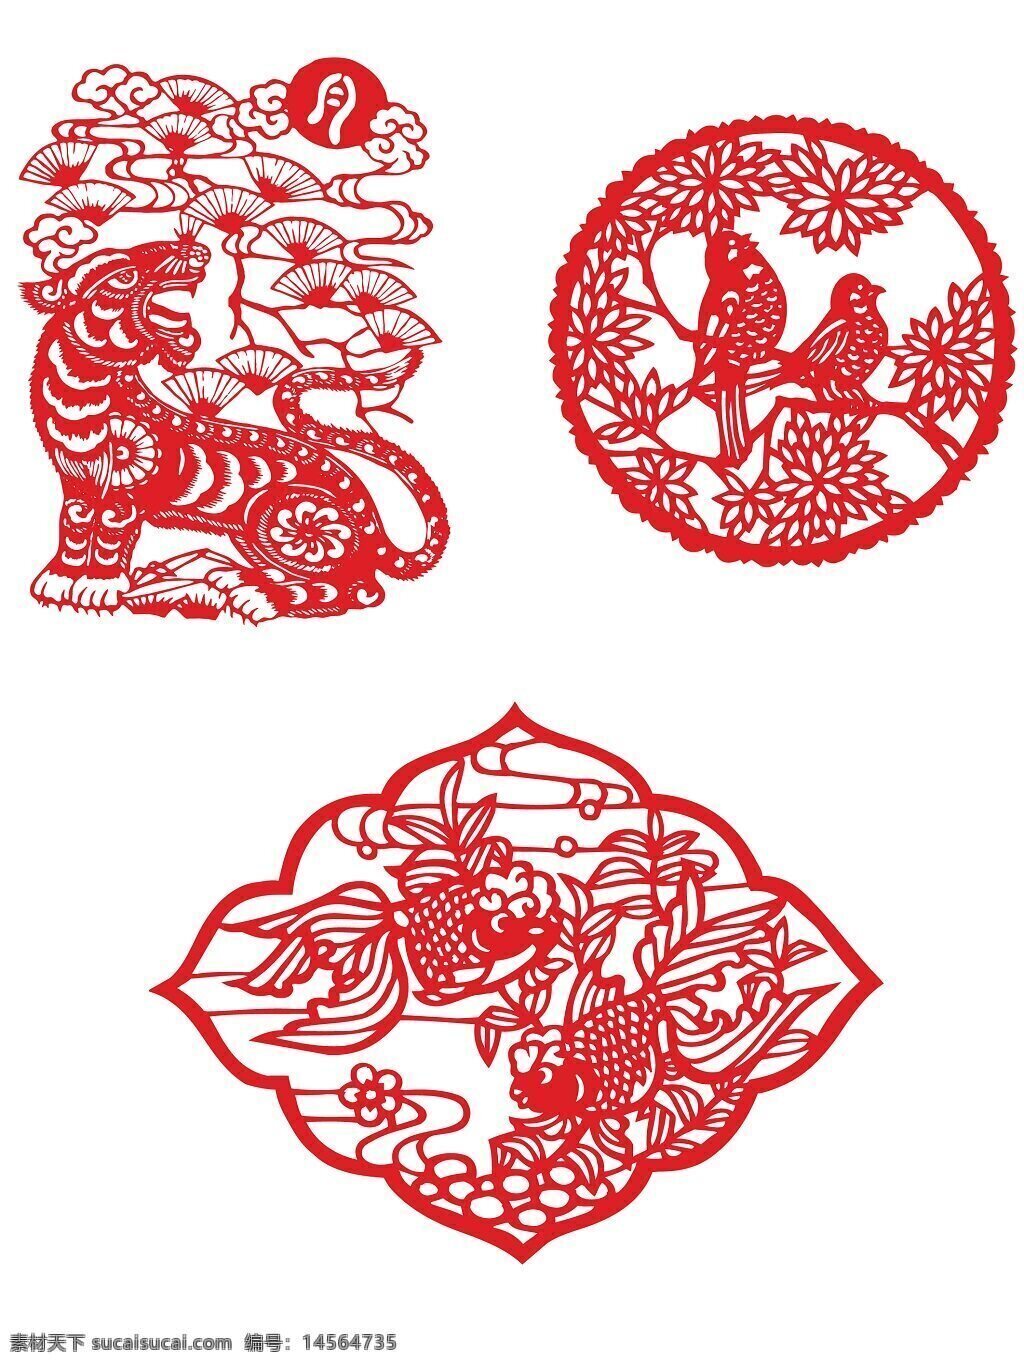 传统剪纸 传统窗花 剪影图片 贴图贴画 传统装饰 民间剪纸艺术 窗花剪纸 喜庆元素 中国传统元素